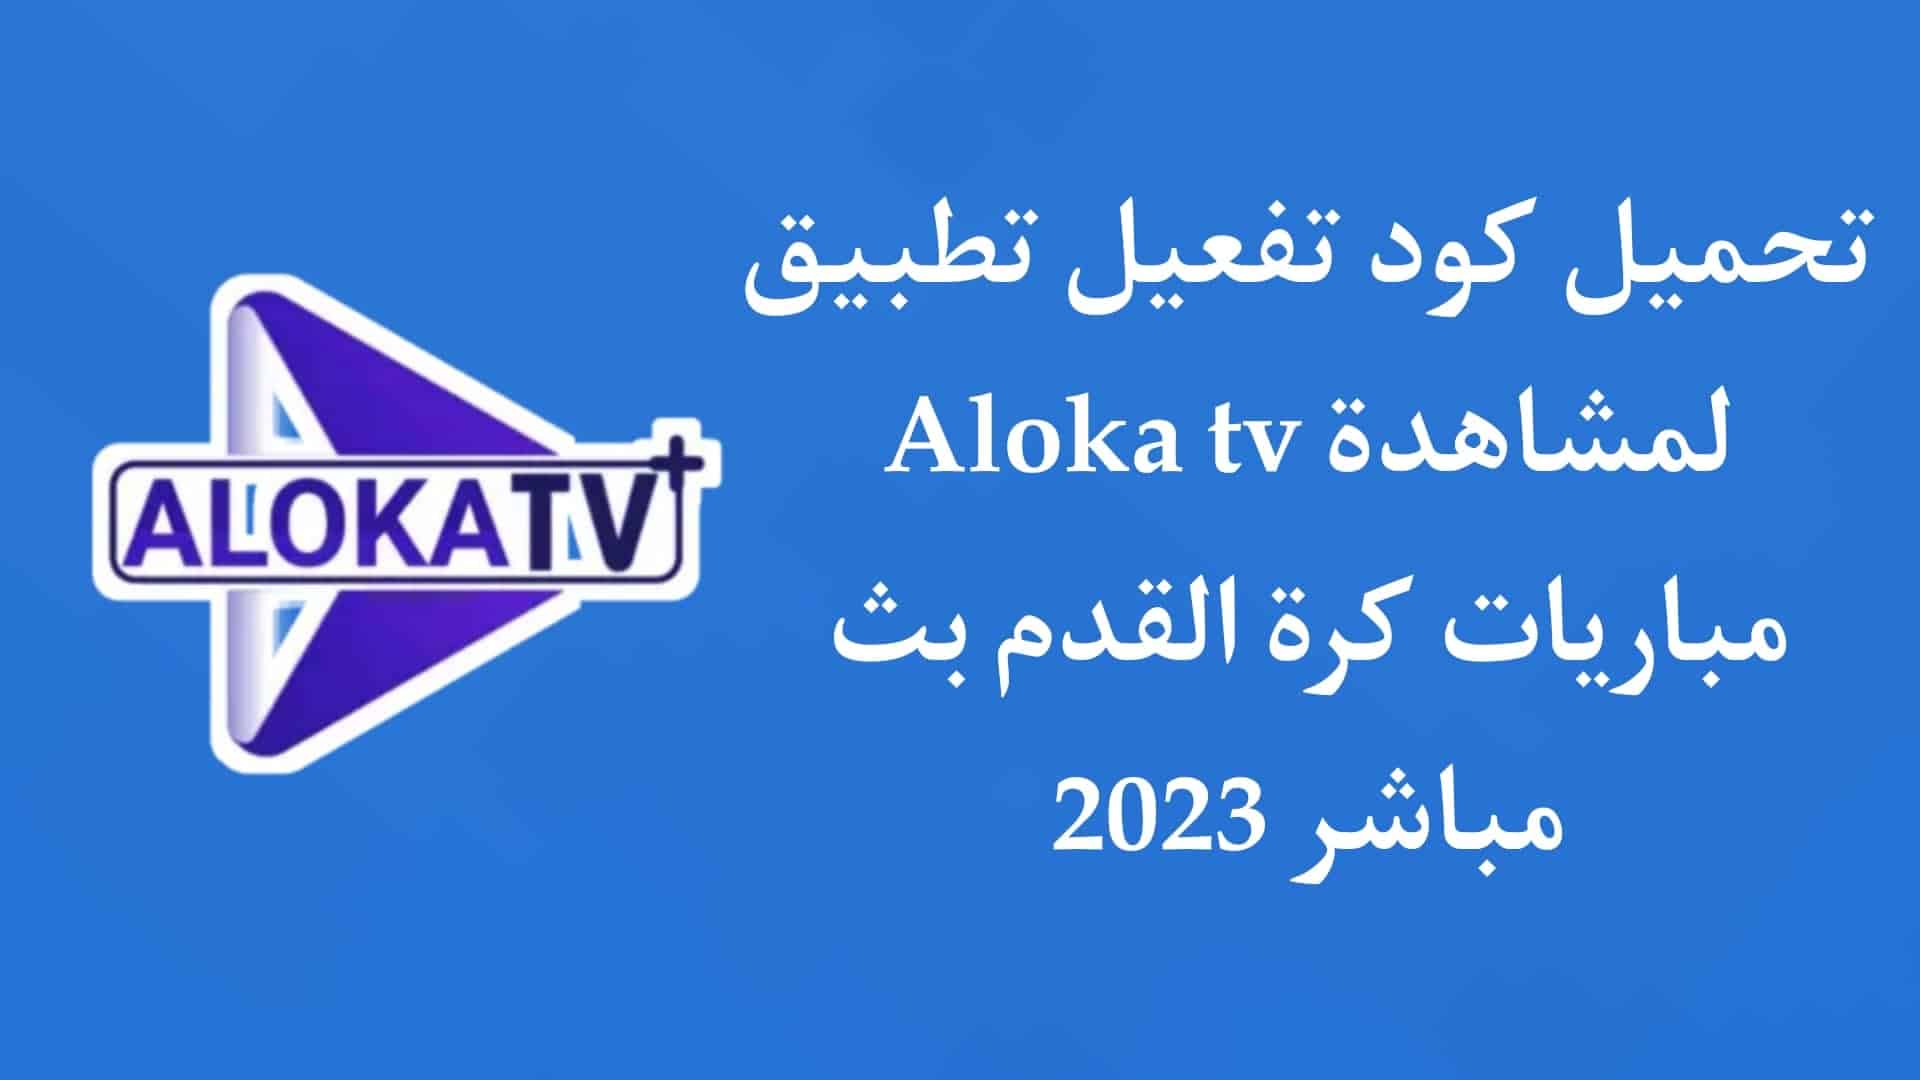 تحميل كود تفعيل تطبيق aloka tv لمشاهدة المباريات 2023 مجانا